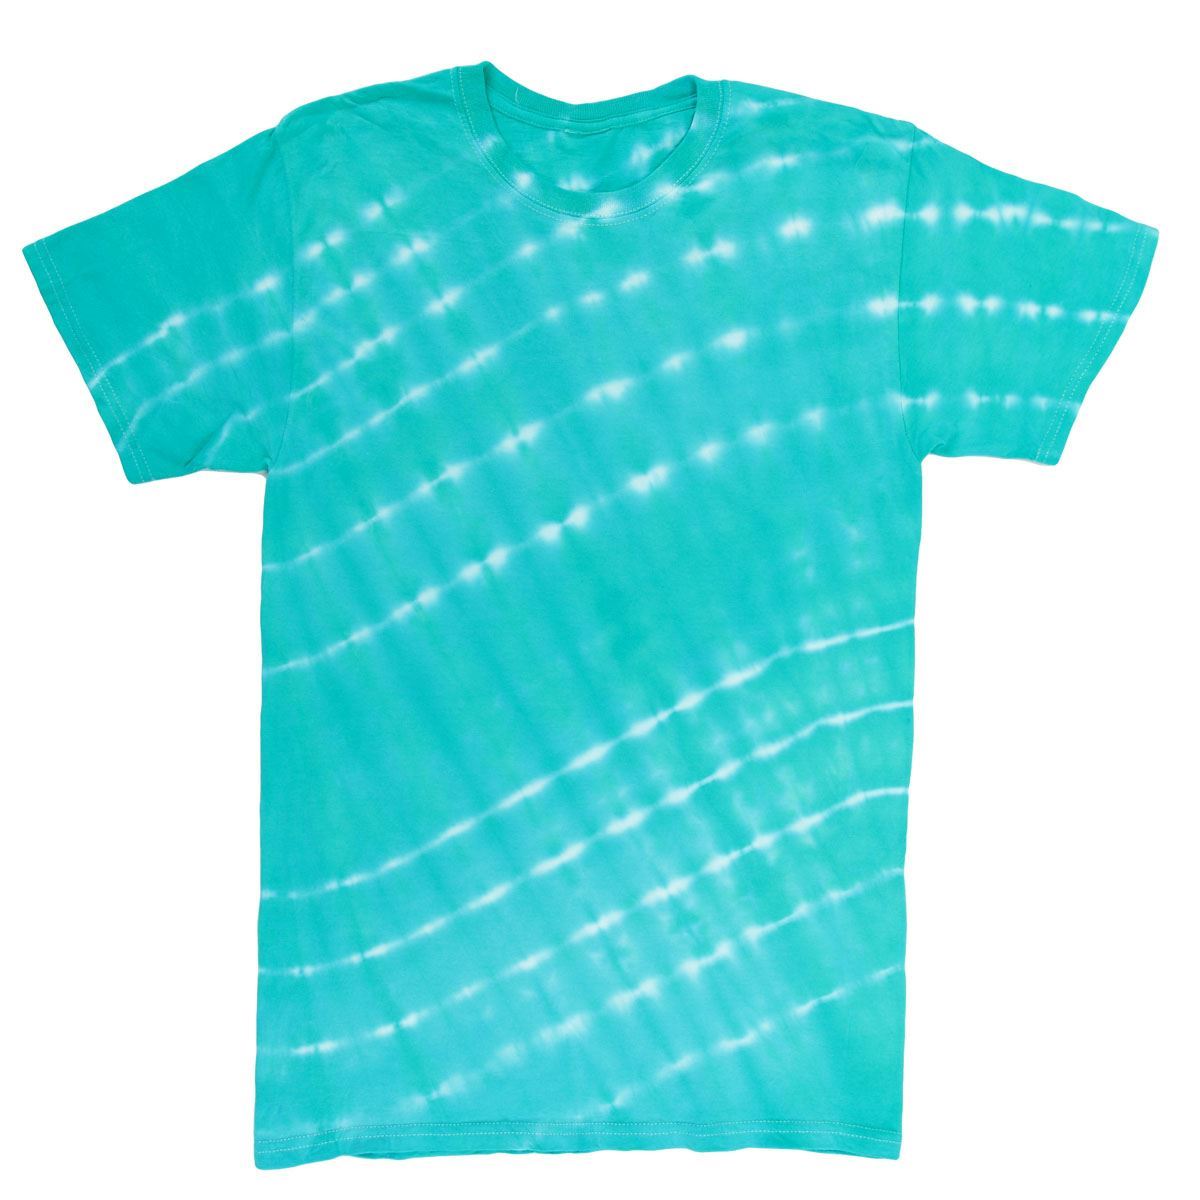 Teal 1-Color Tie-Dye Kit - 2